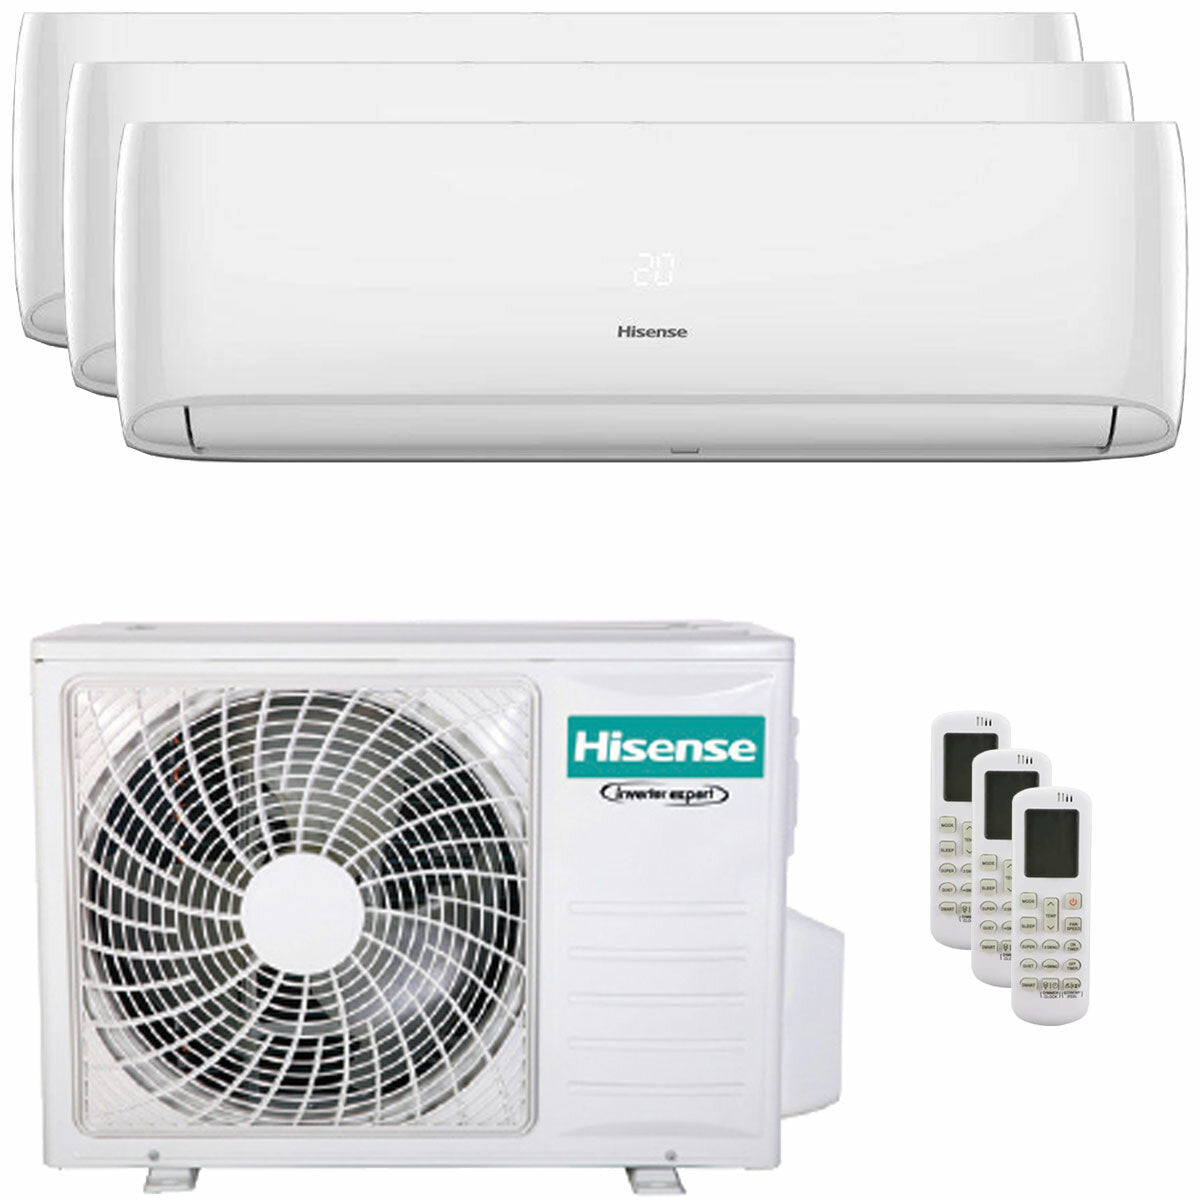 Hisense Hi-Comfort Trial Split Klimaanlage 7000+9000+9000 BTU Inverter A++ WLAN Außengerät 6,3 kW